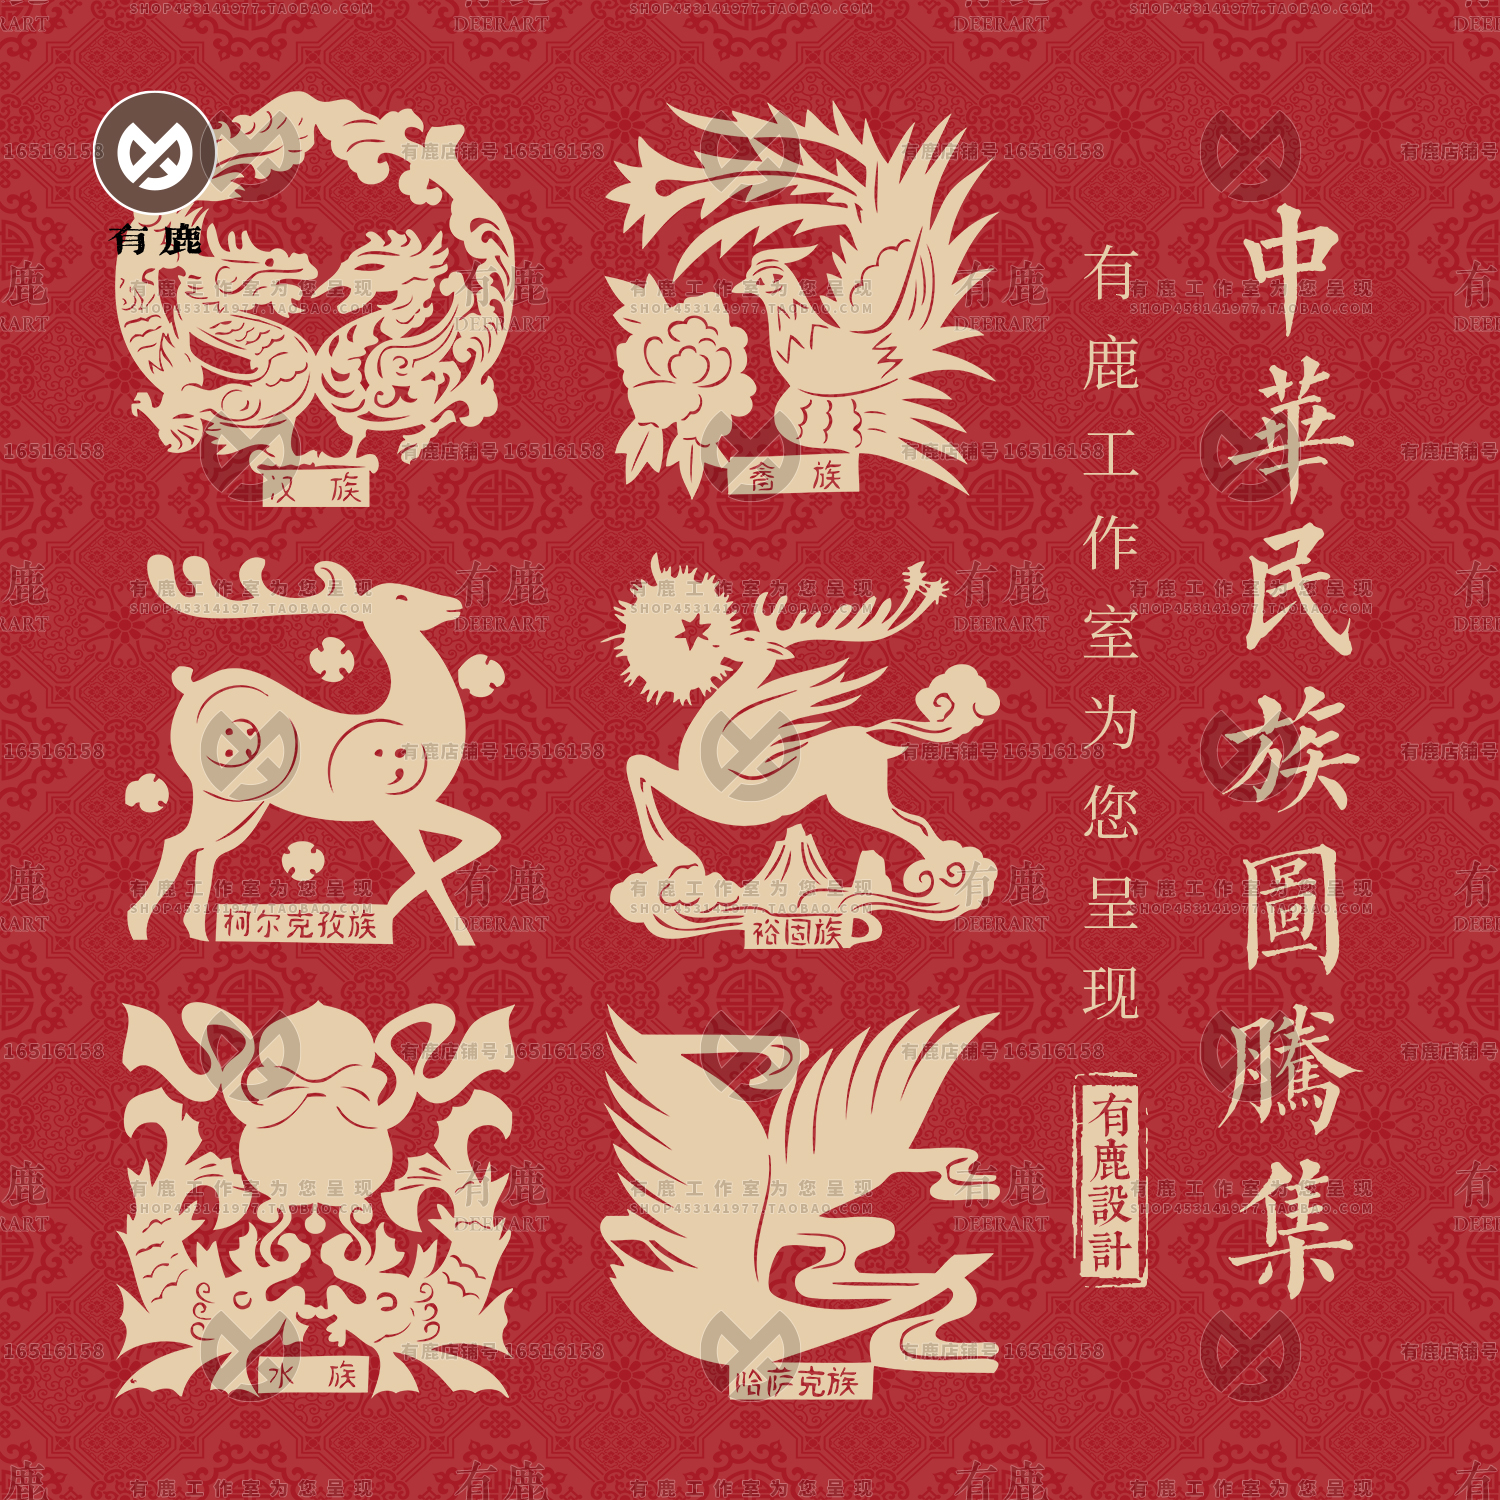 中华民族中国传统56个少数民族图腾符号纹样矢量素材png免抠图案